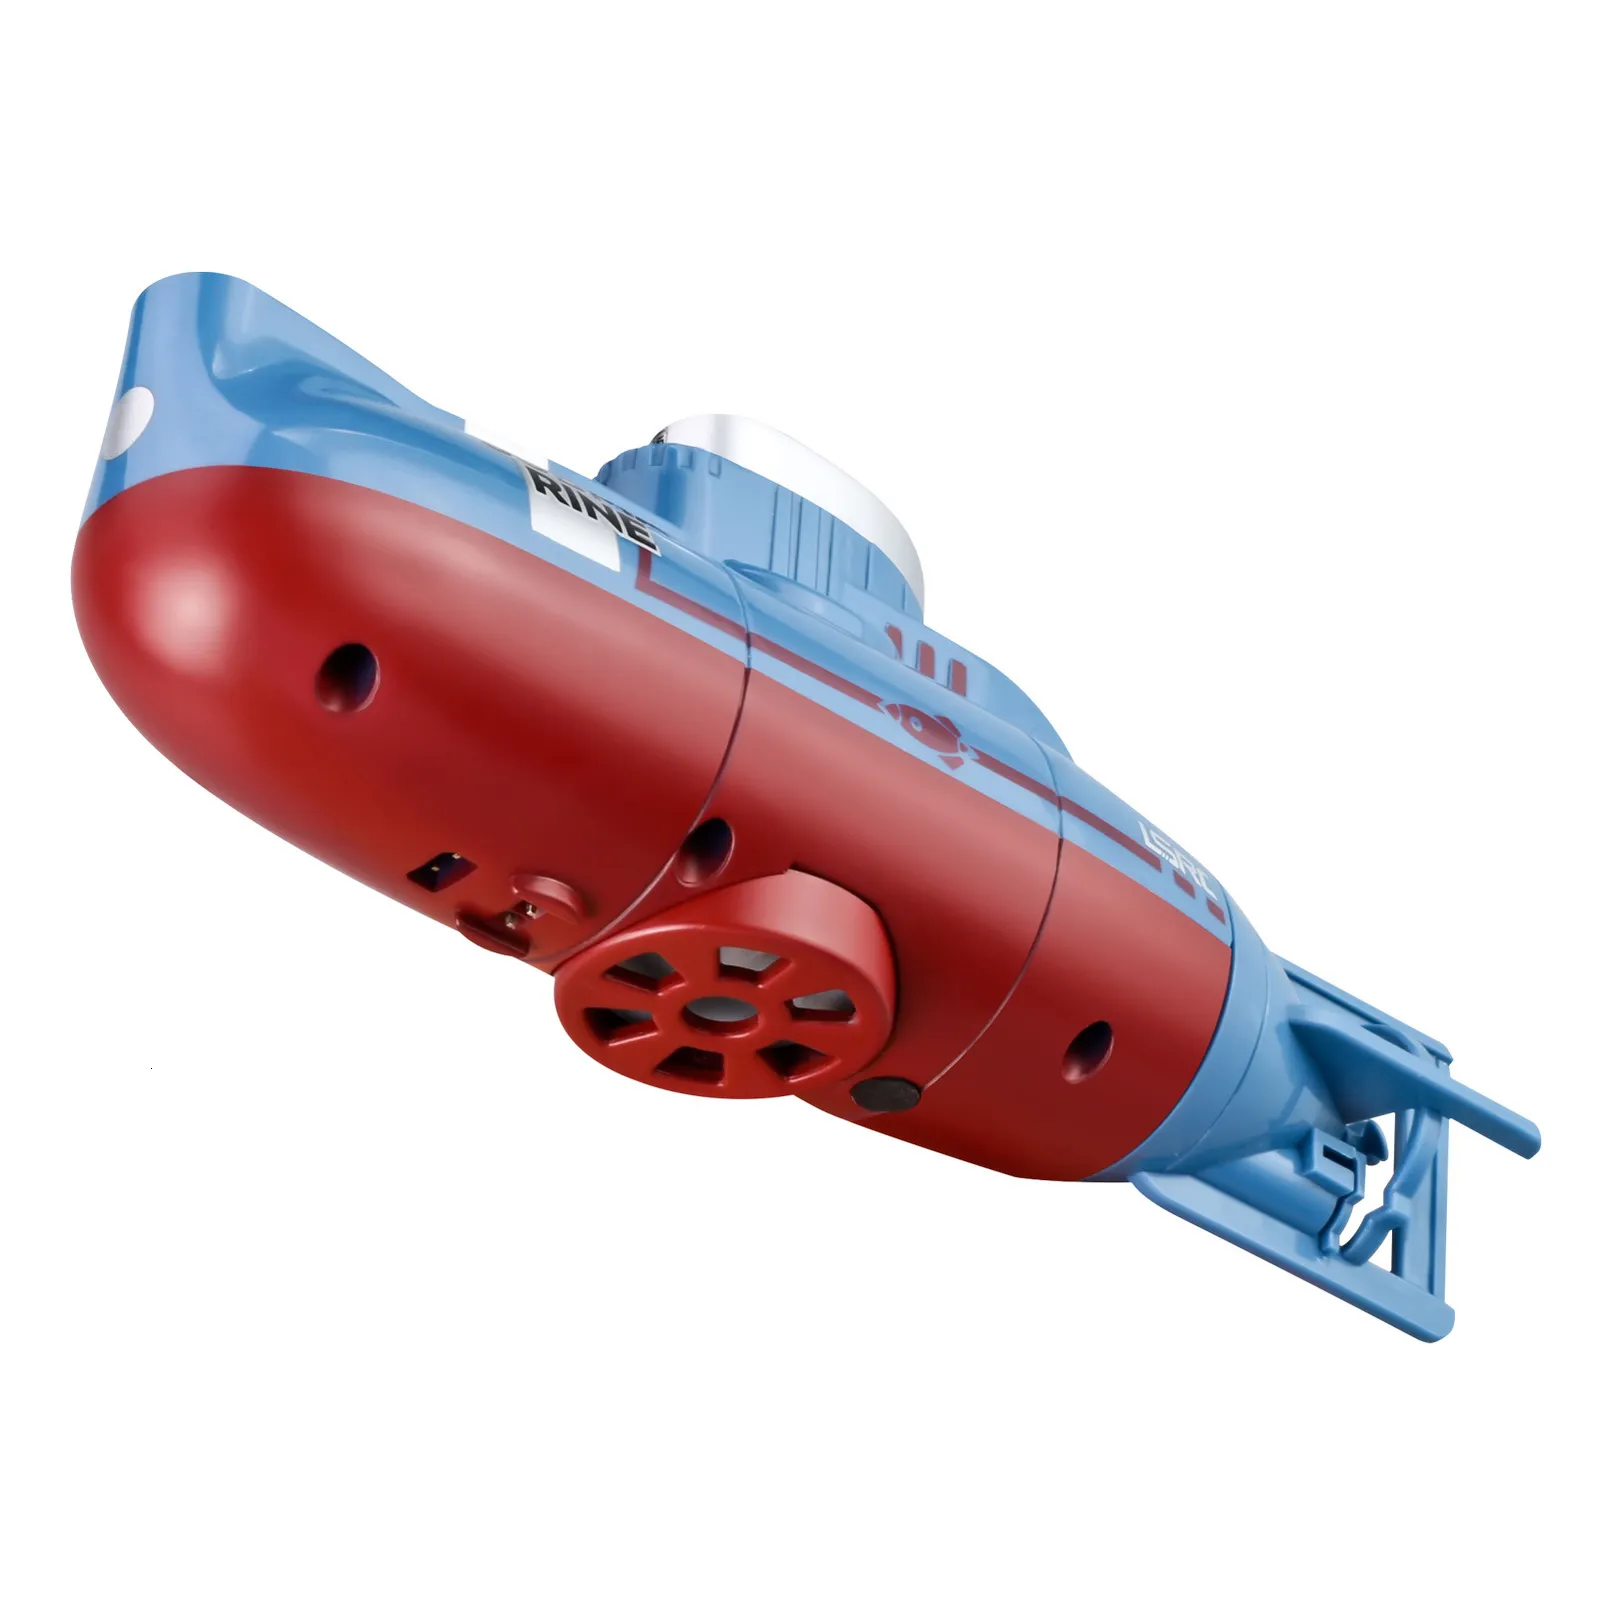 Sous-marin télécommandé RC pour enfants, jouet électrique refroidi